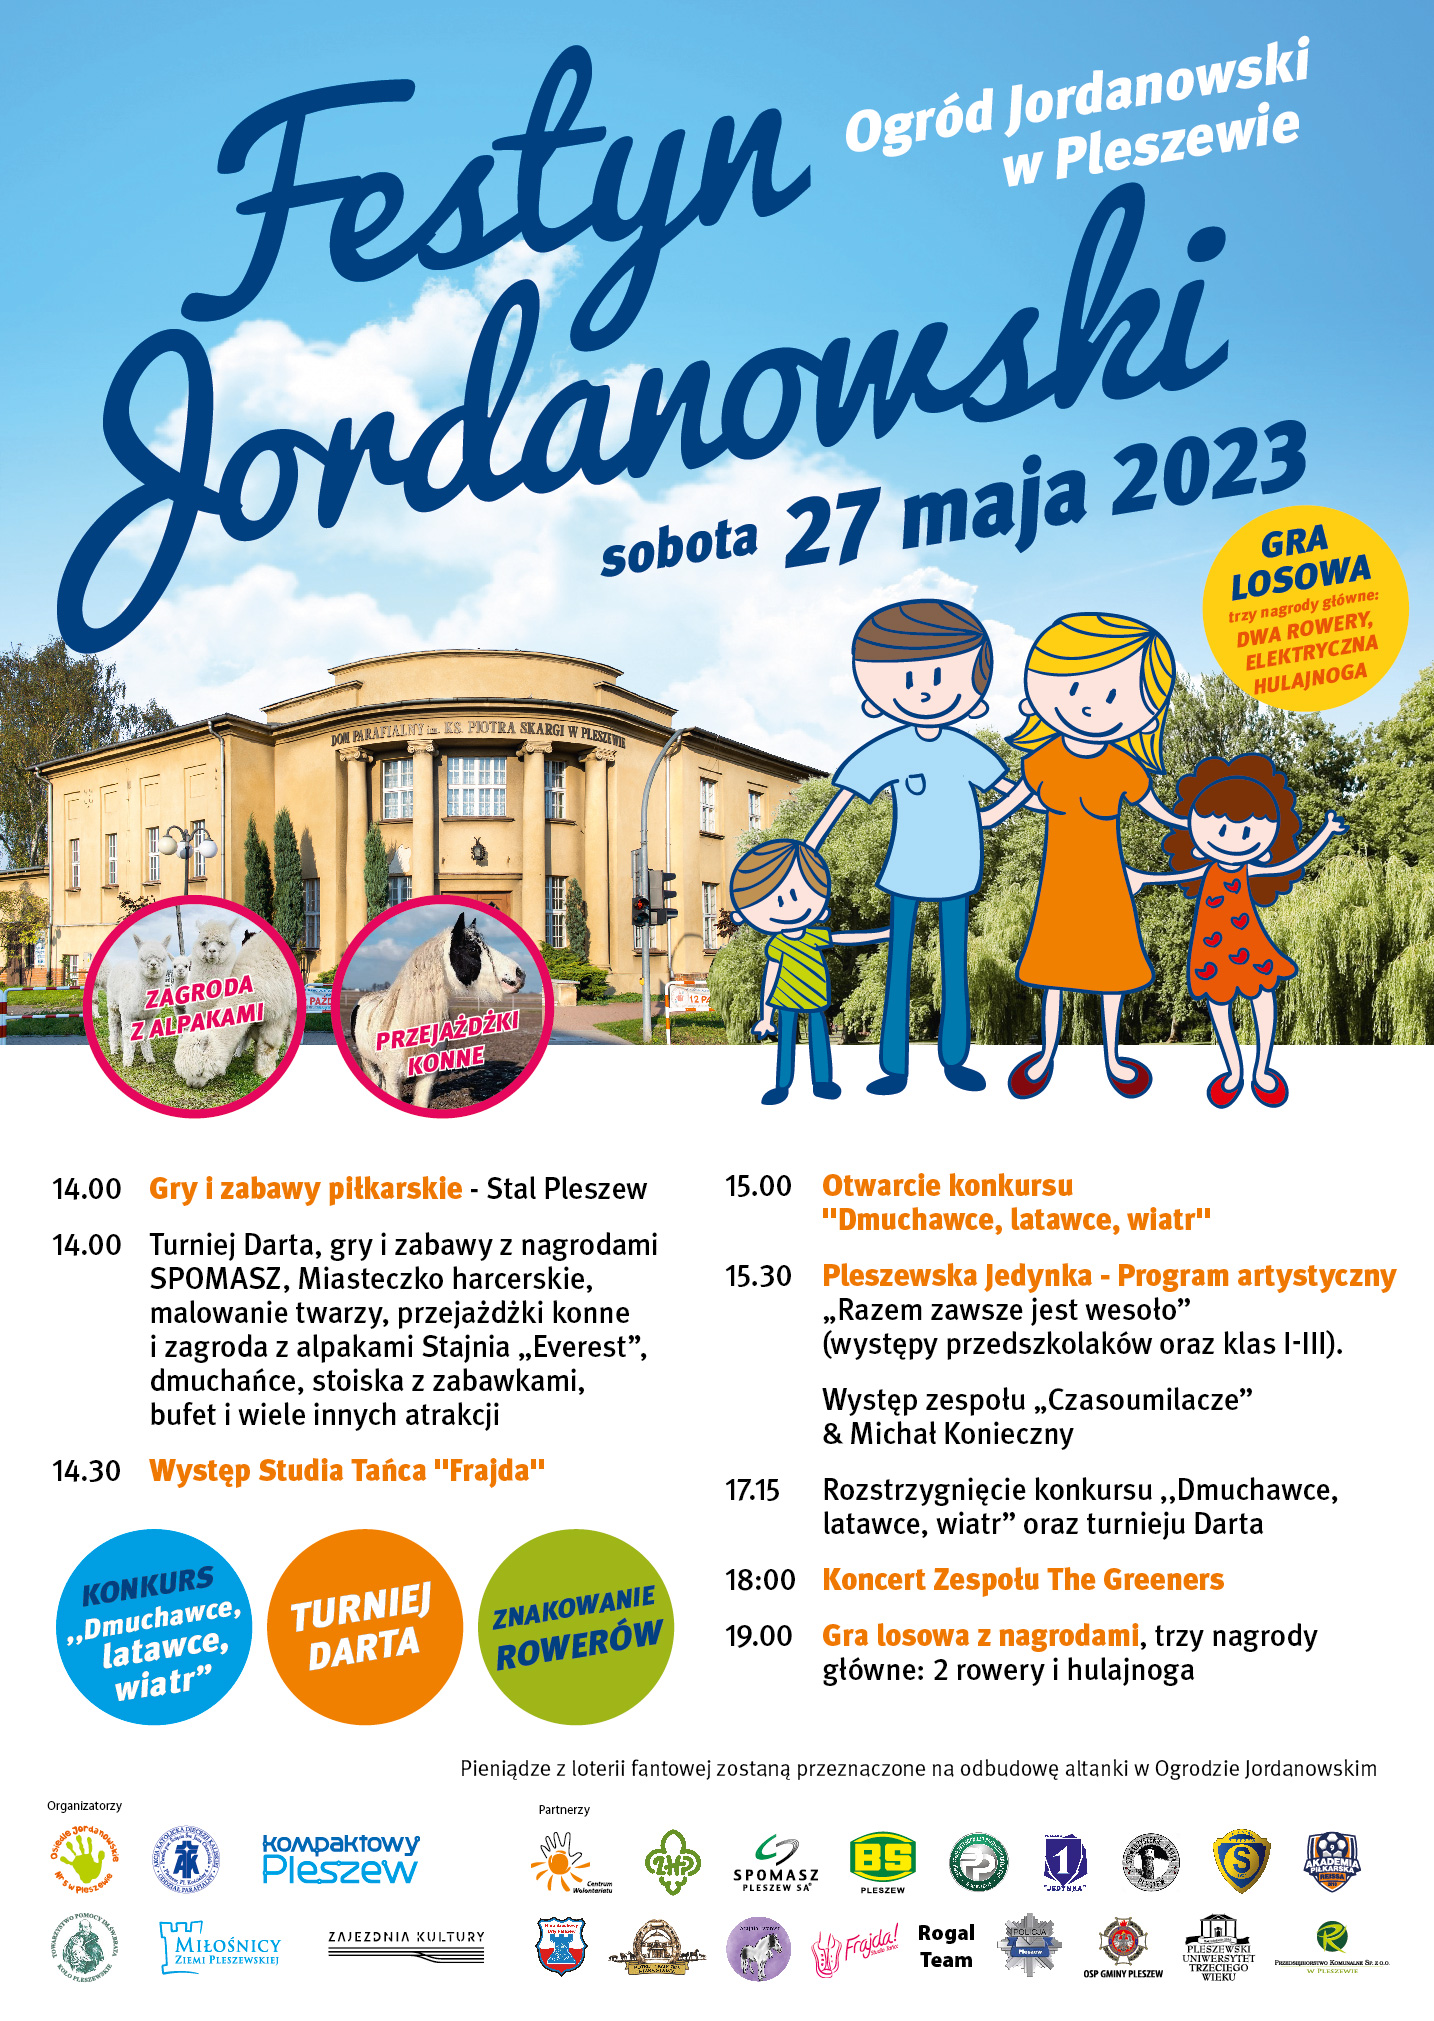 Plakat Festynu Jordanowskiego odbywającego się 27 maja 2023 roku od godziny 14:00 w Ogrodzie Jordanowskim w Pleszewie.